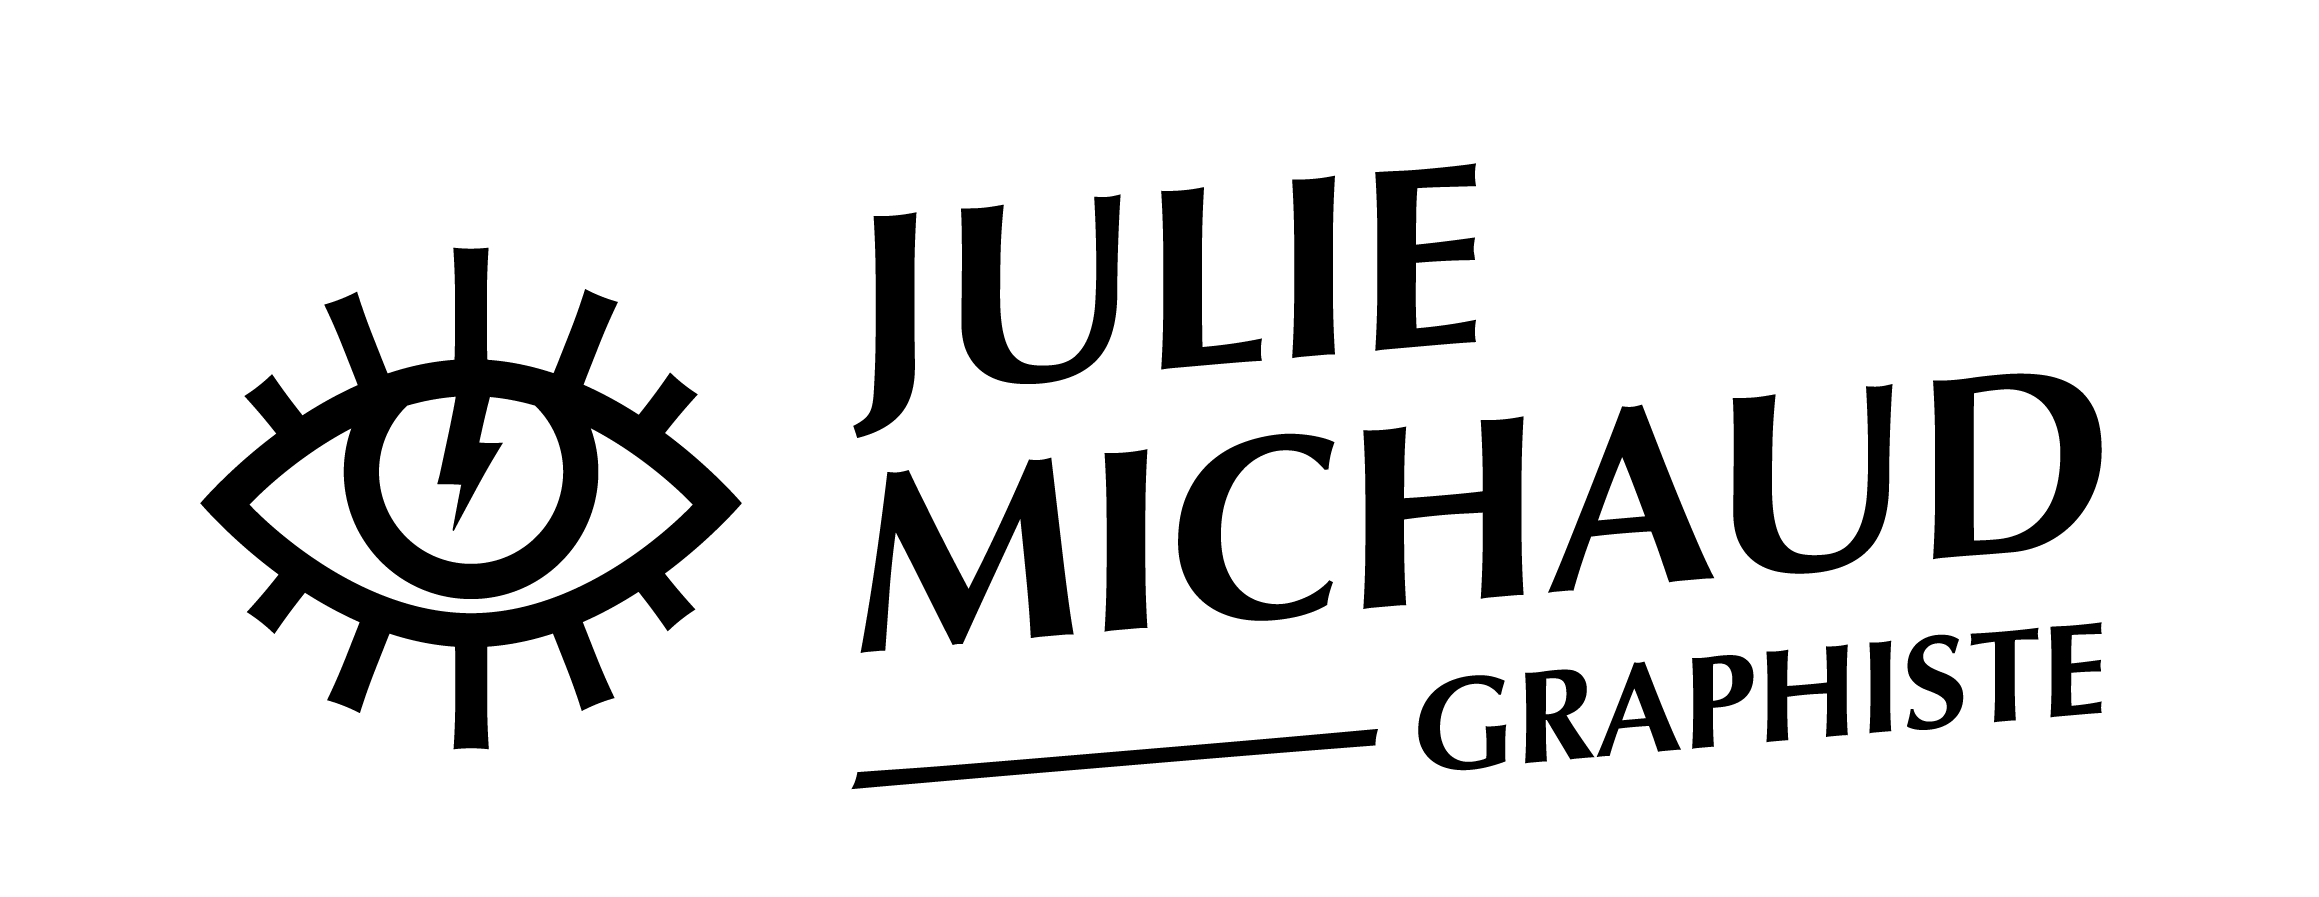 Julie Michaud